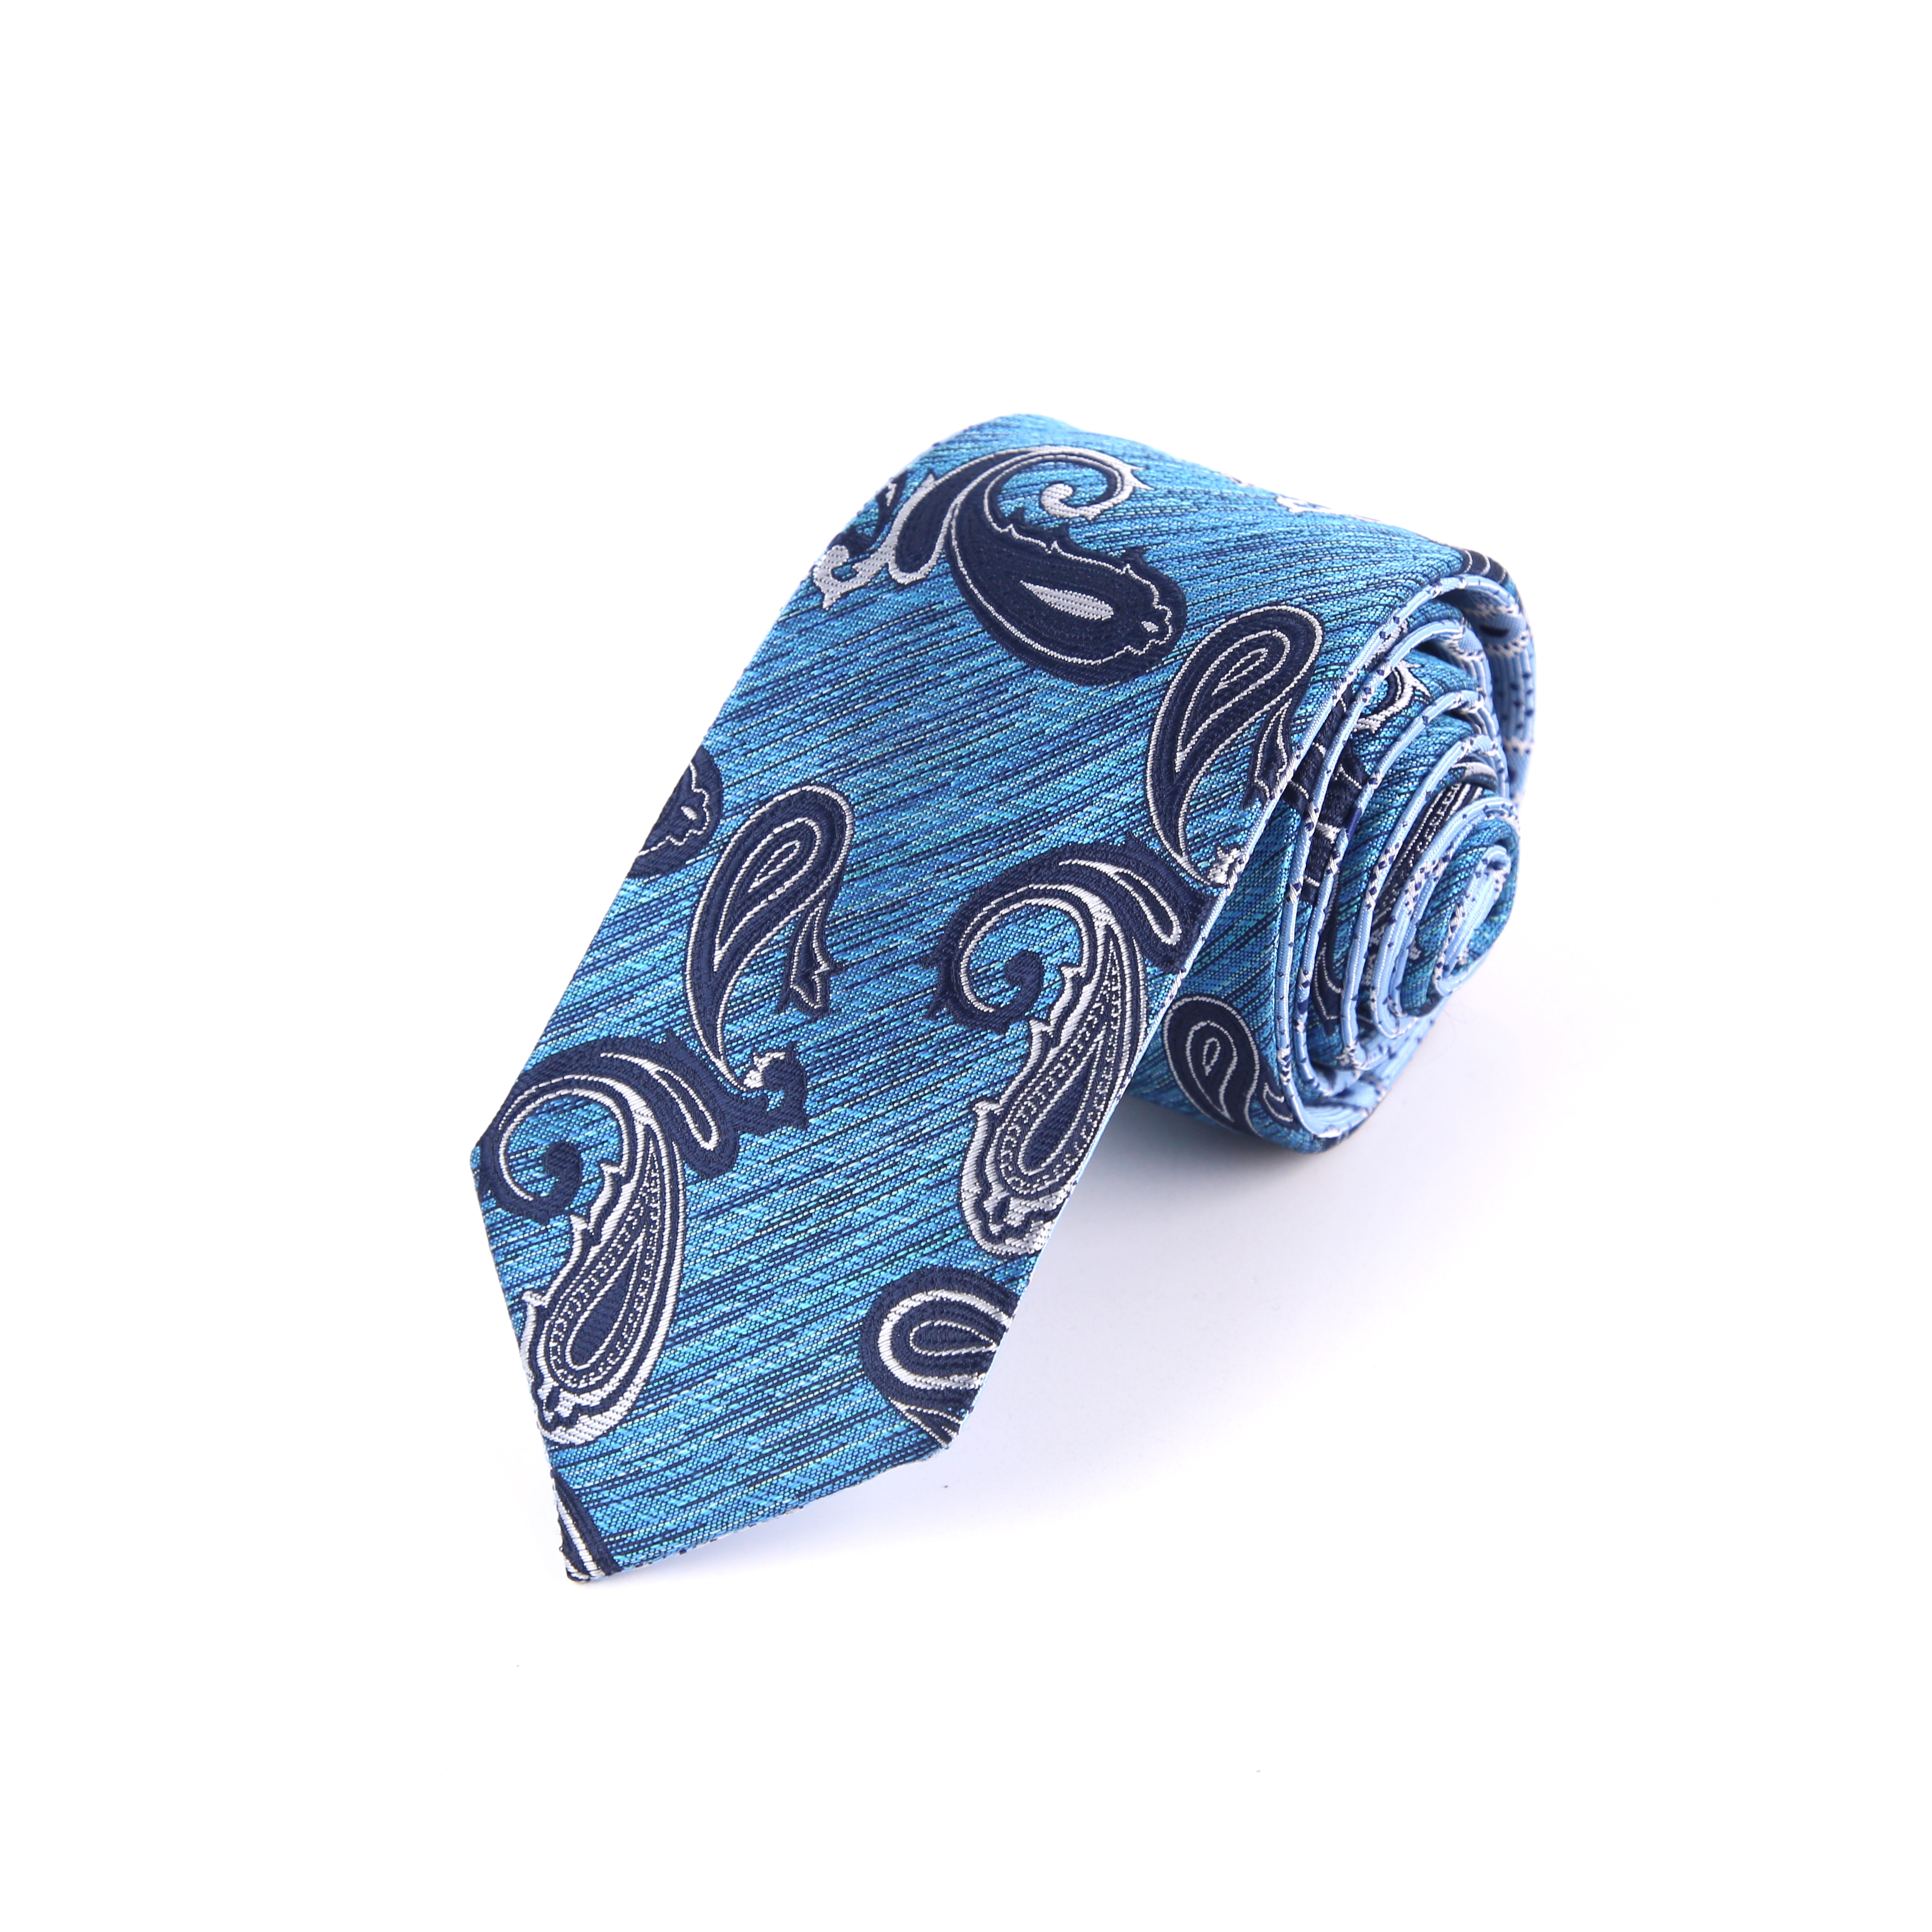 厂家直供 职业正装商务领带服饰穿搭配件商务时尚衬衫男士领带